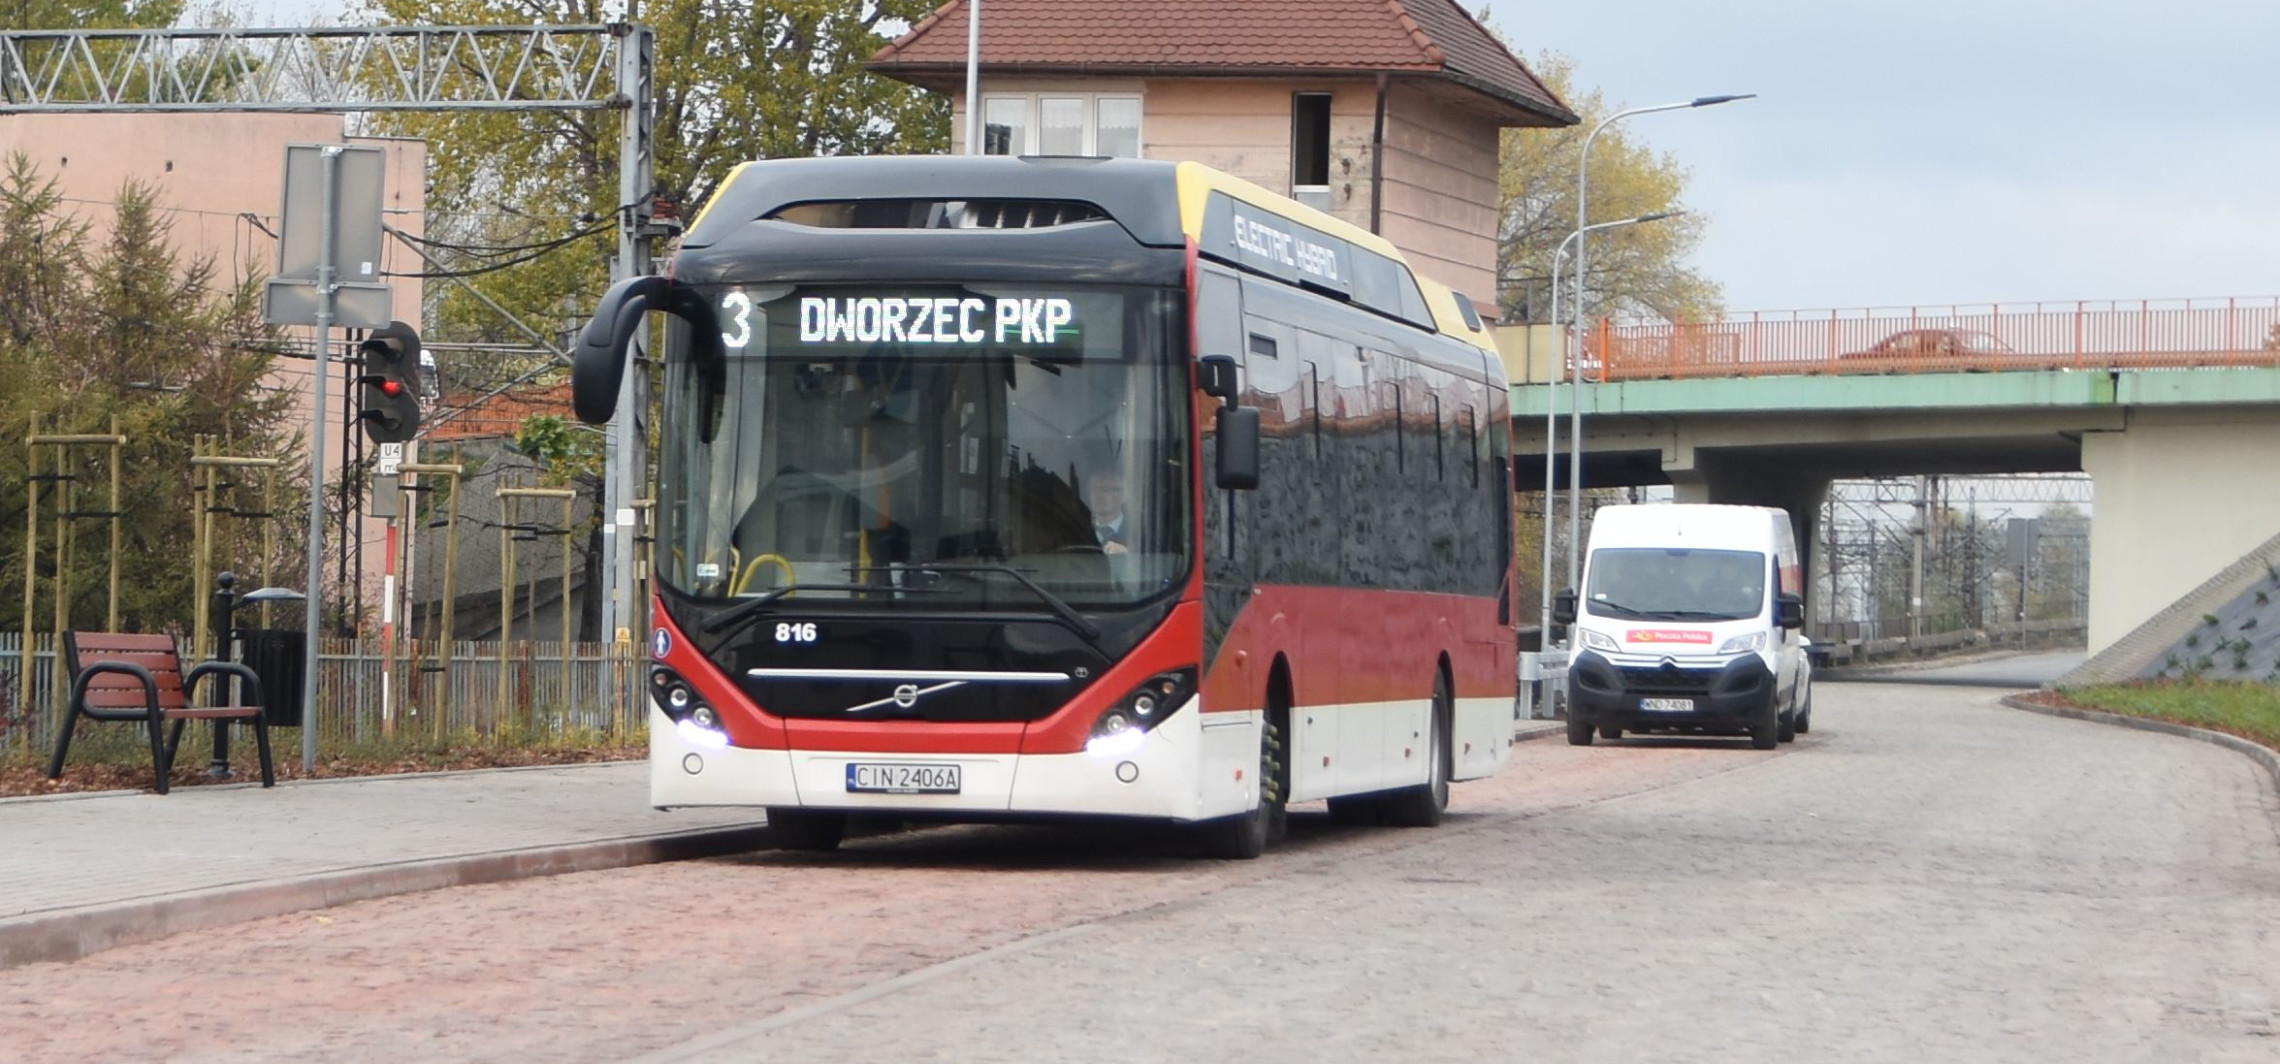 Inowrocław - Autobusy pojadą rzadziej, ale nie jeden za drugim